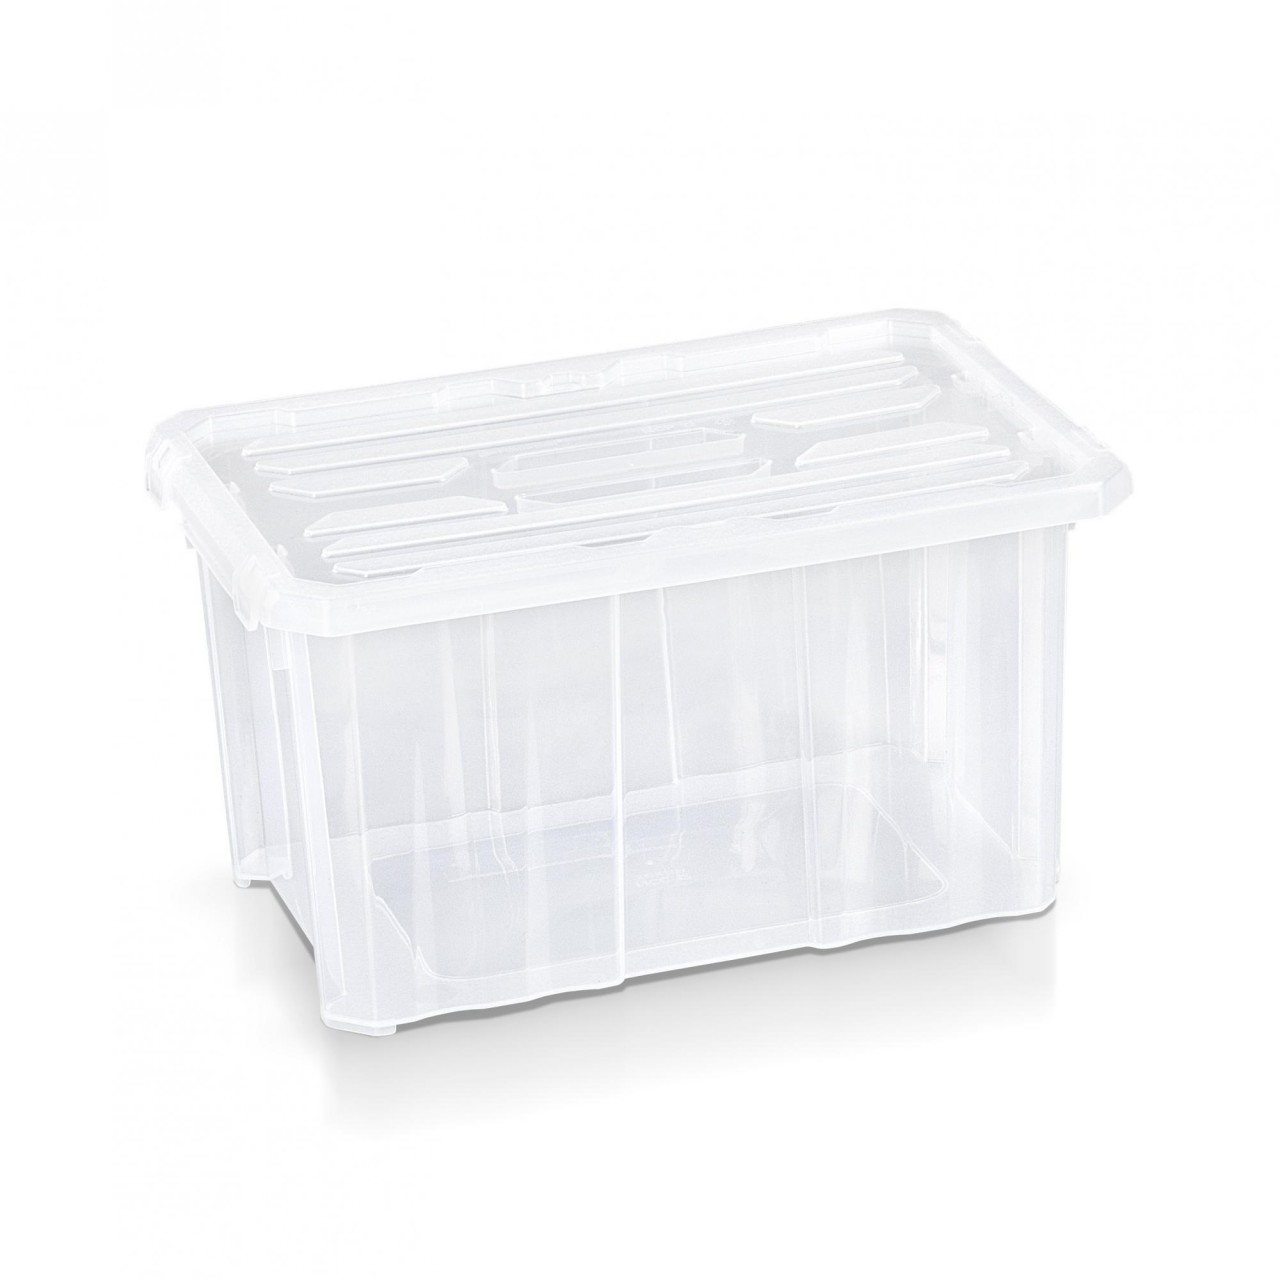 Deckel 30 x 20 x 16,5 cm transparent Plastikbox Kunststoffbox Aufbewahrungsbox 